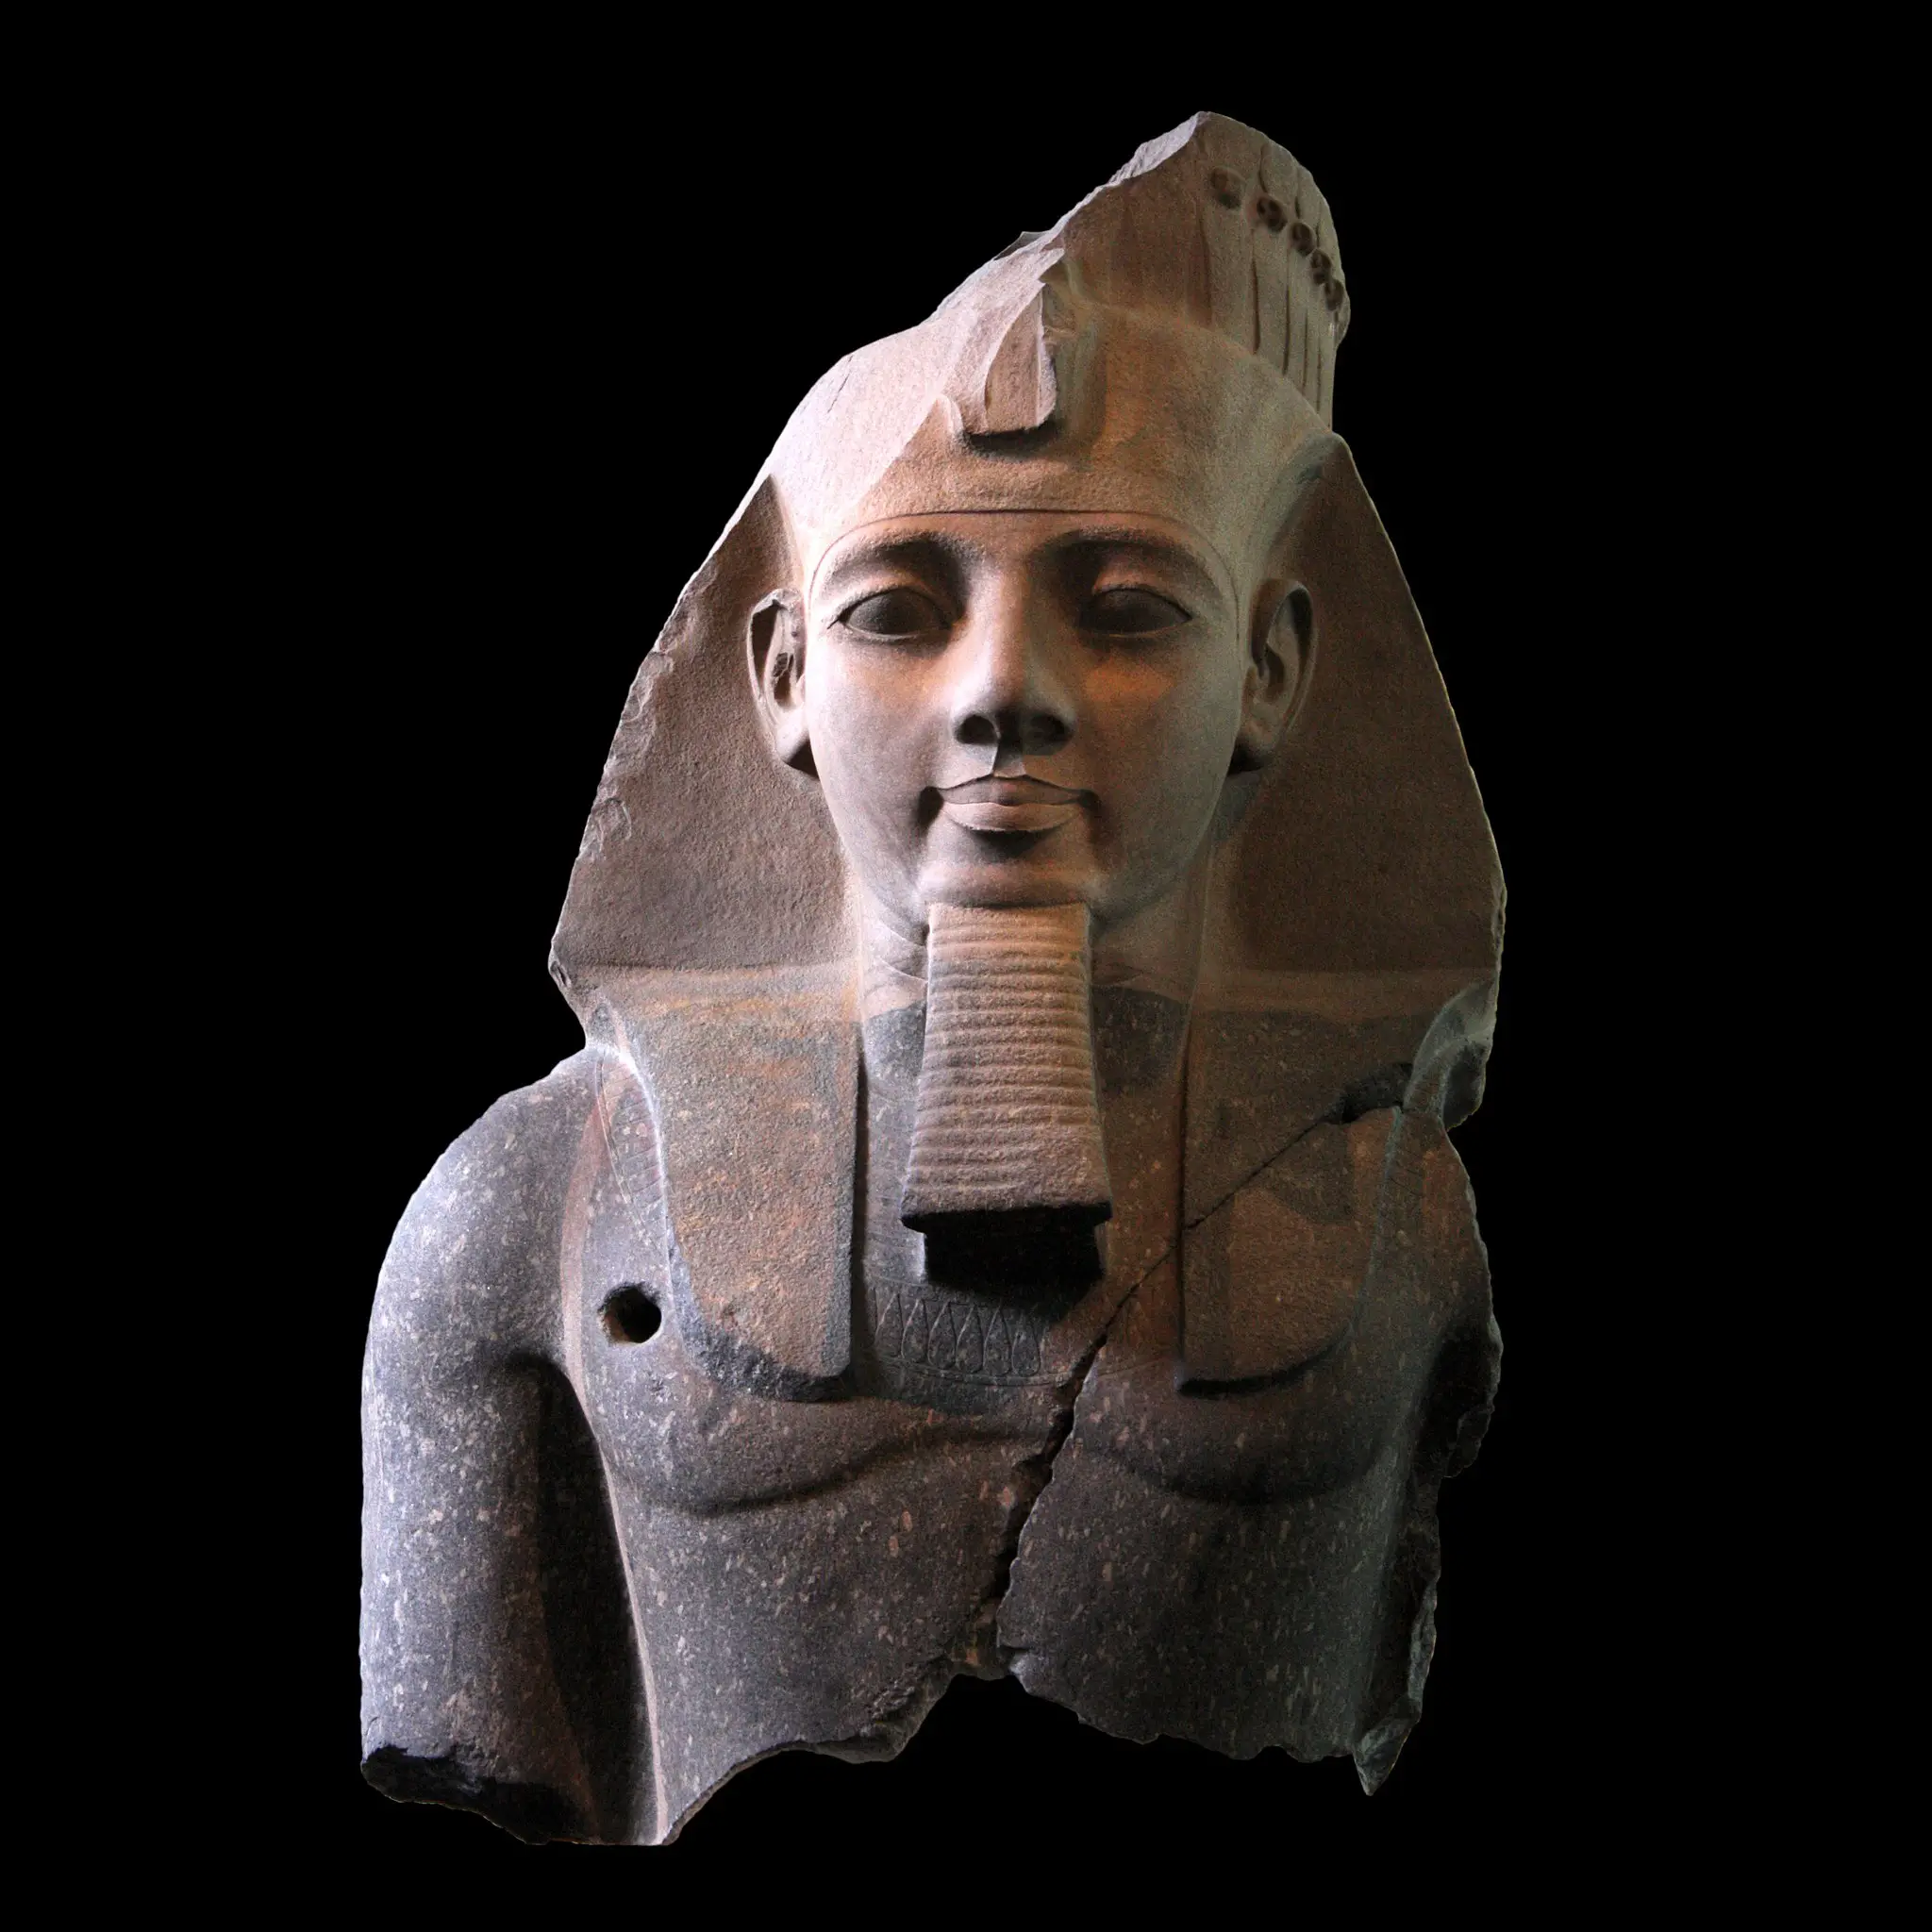 La batalla de Kadesh: cómo el faraón Ramsés II se convirtió en 